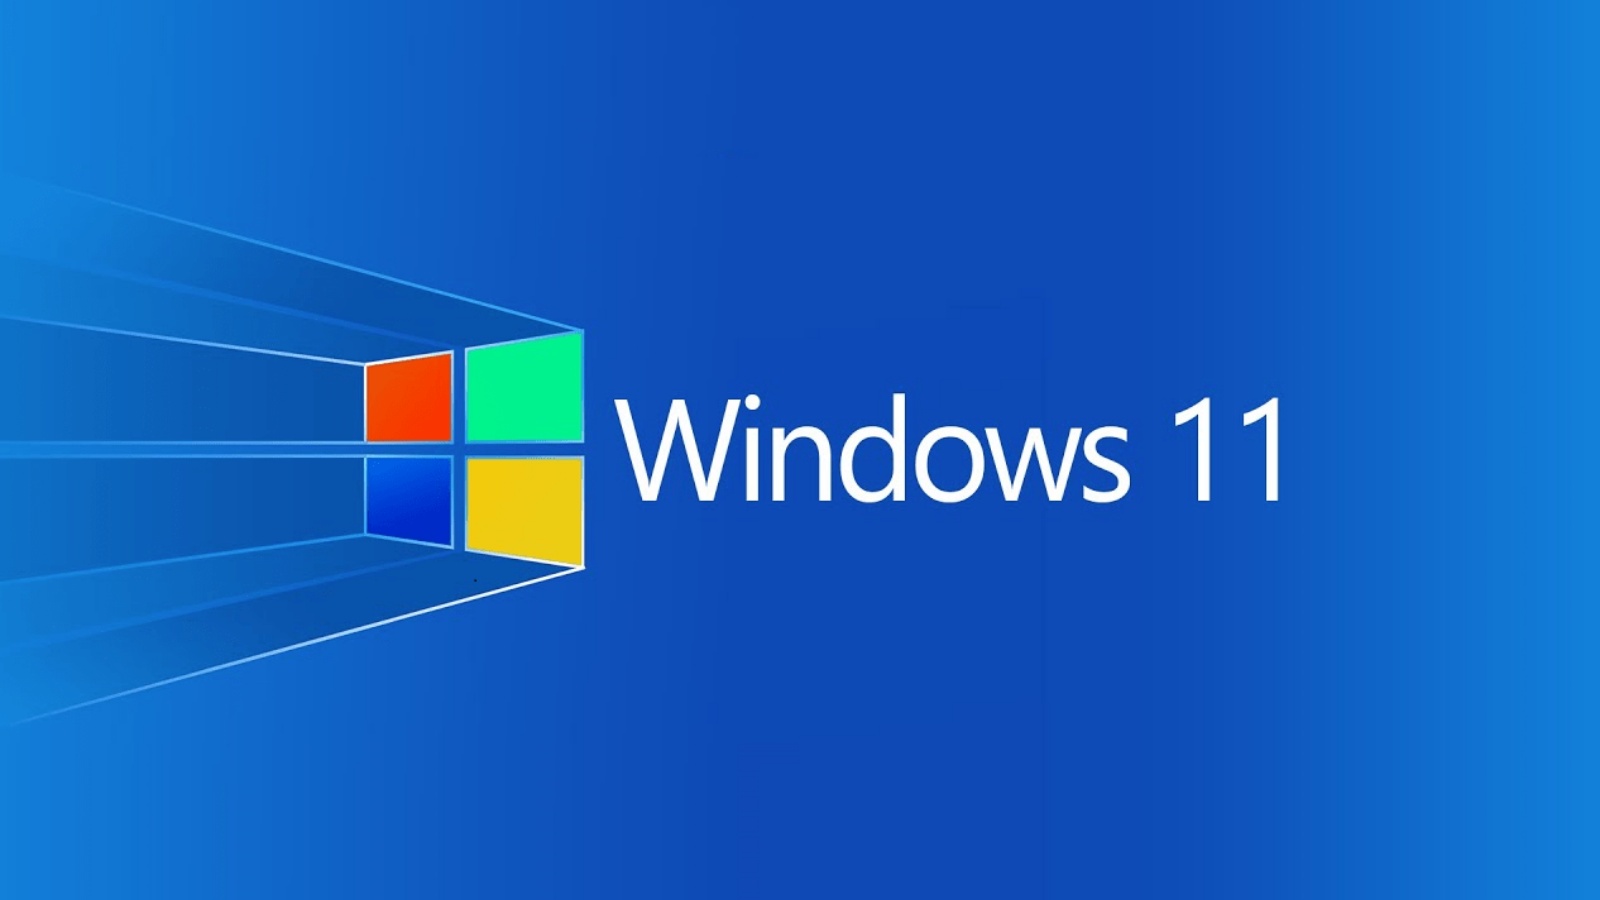 Oficjalnie rozpoznano poważny problem z systemem Windows 11